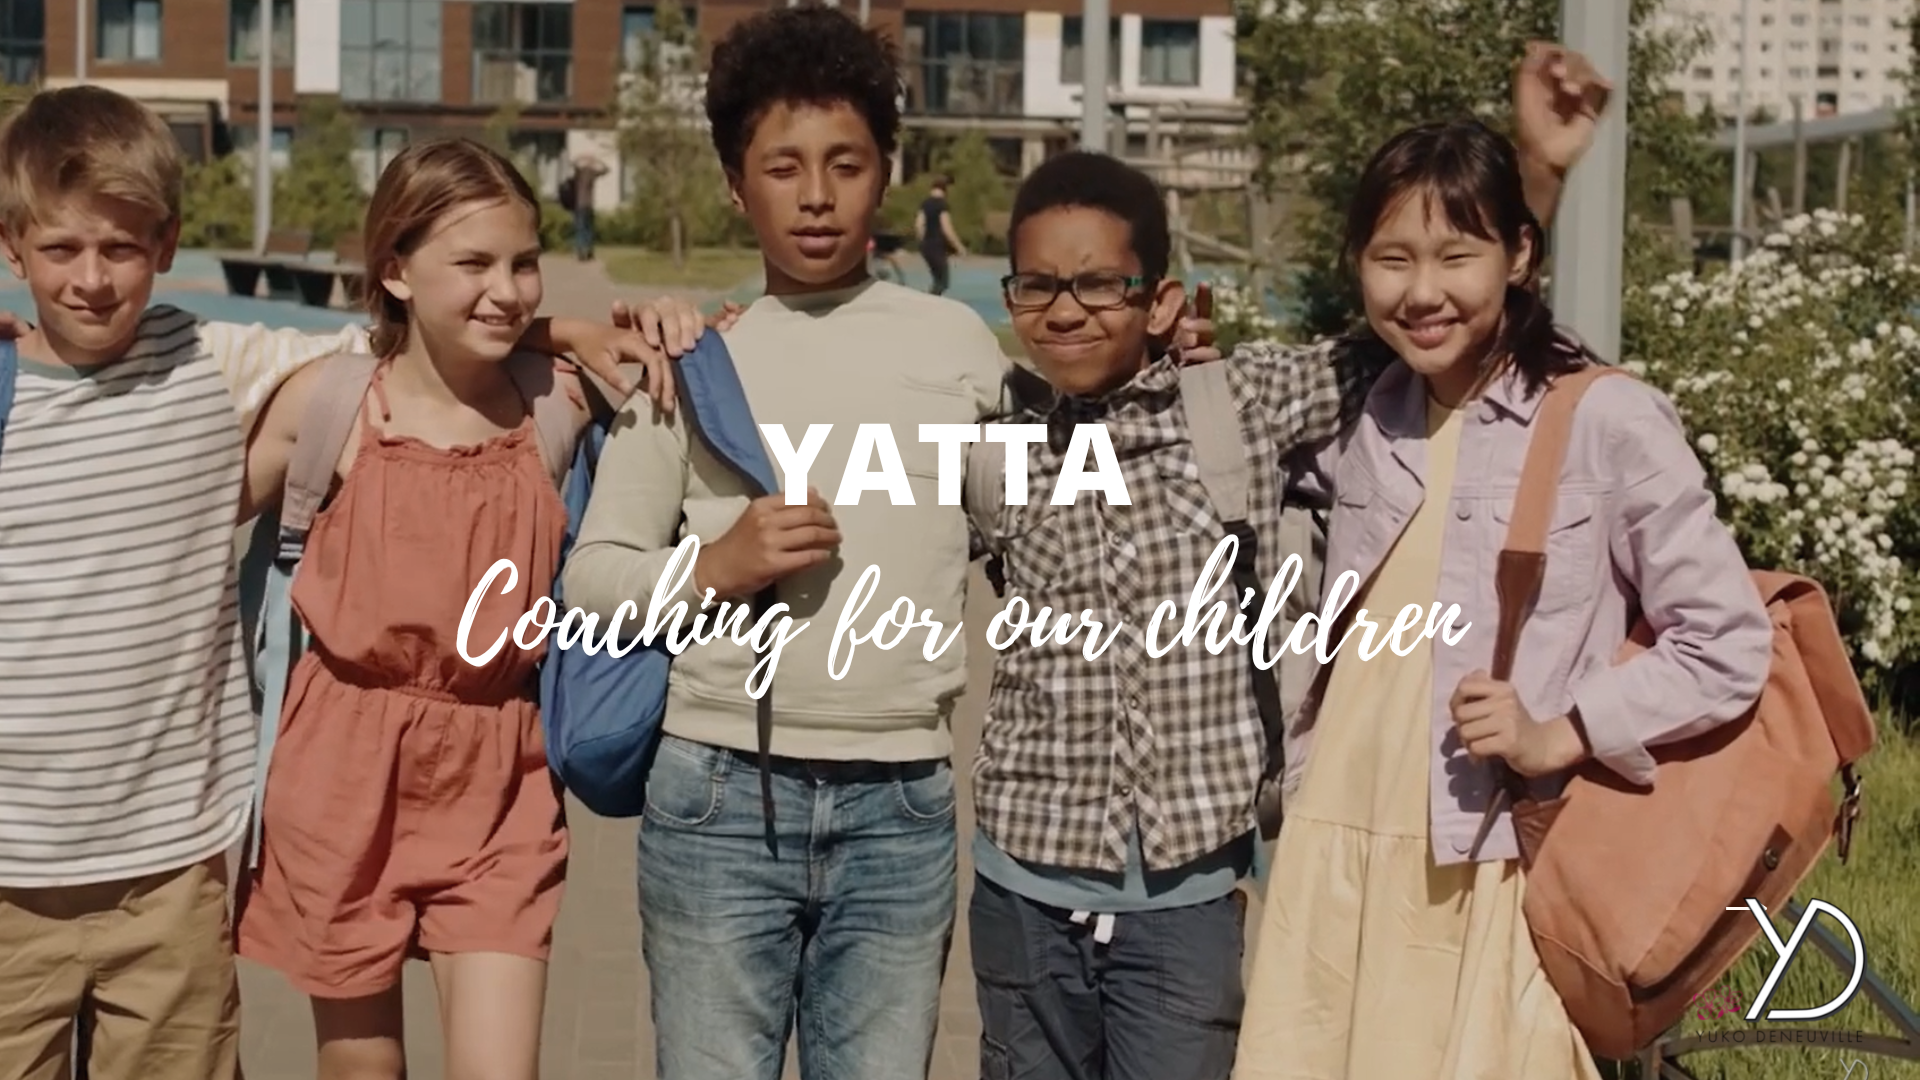 YATTA coaching for children